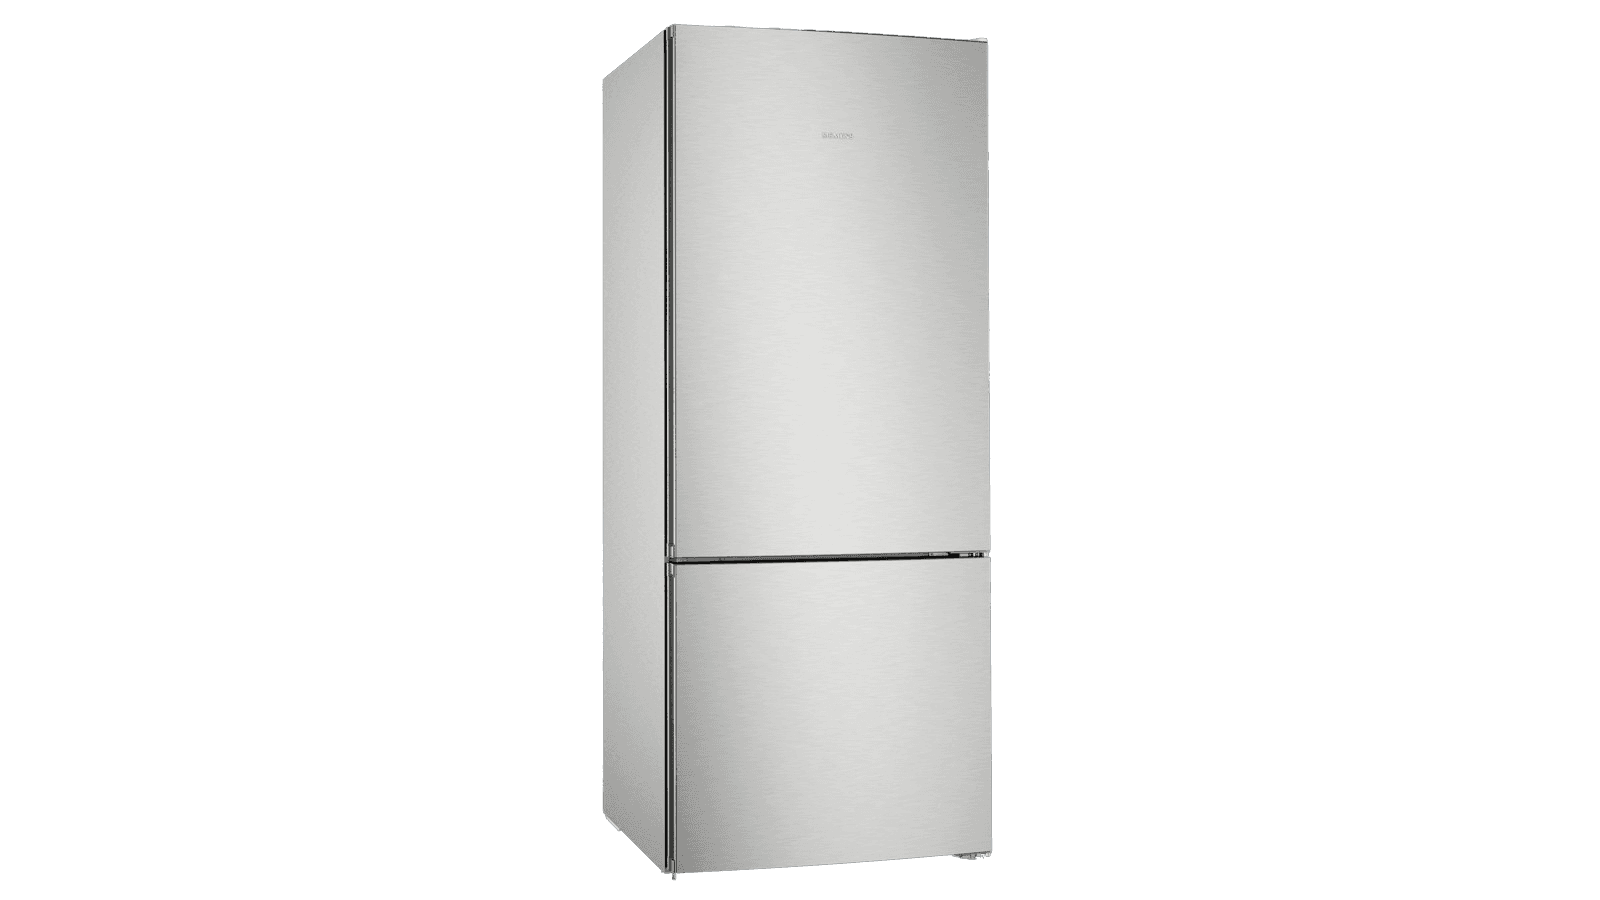 ثلاجة فريزر عمودية 578 لتر سيمنز Siemens Bottom Freezer Refrigerator